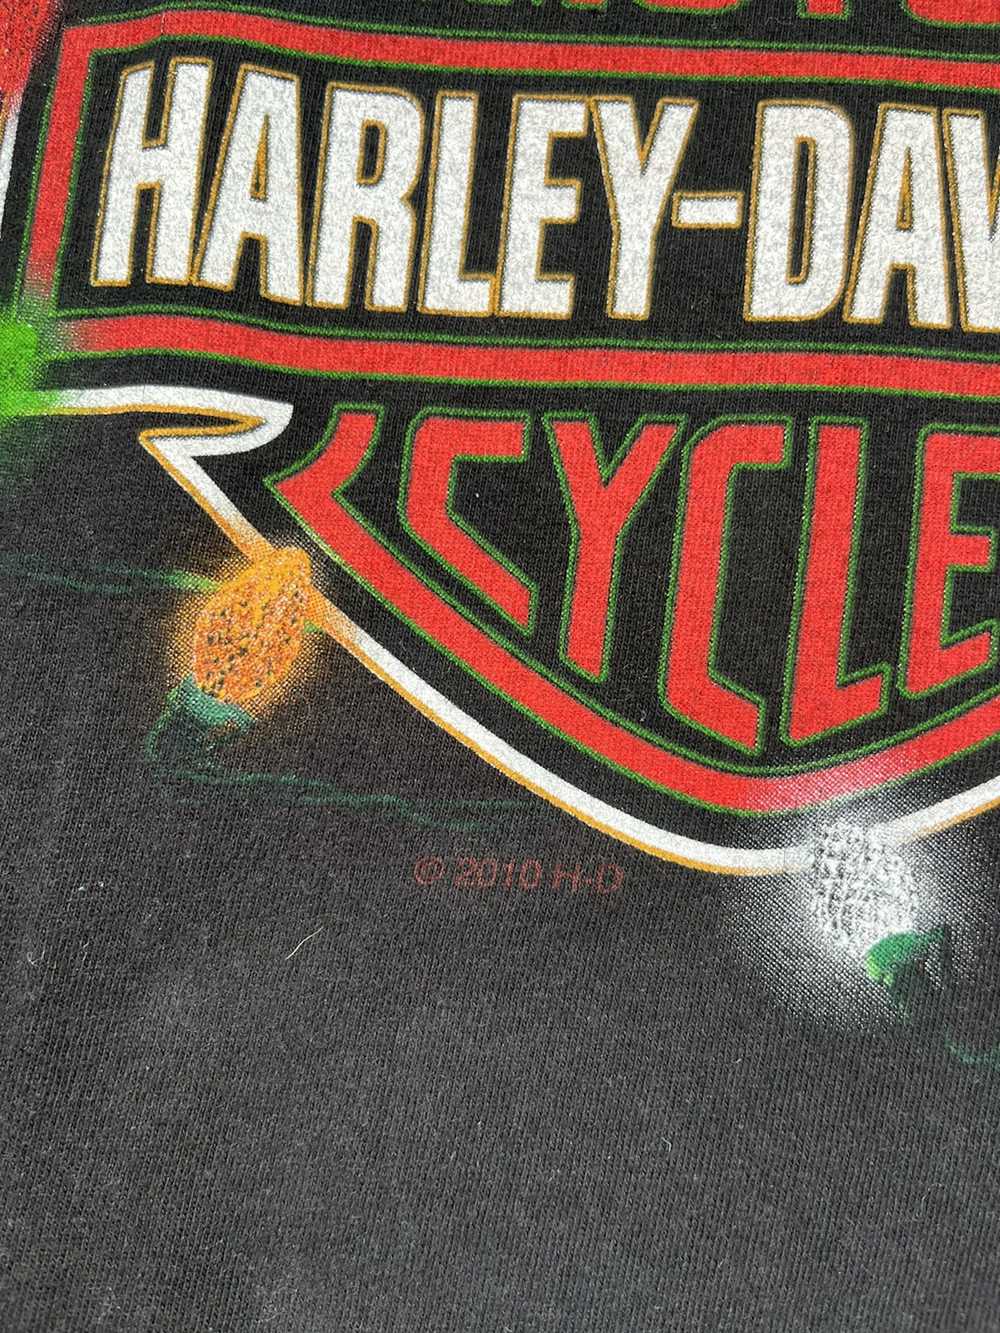 Harley Davidson × Vintage Vintage Christmas Harle… - image 3